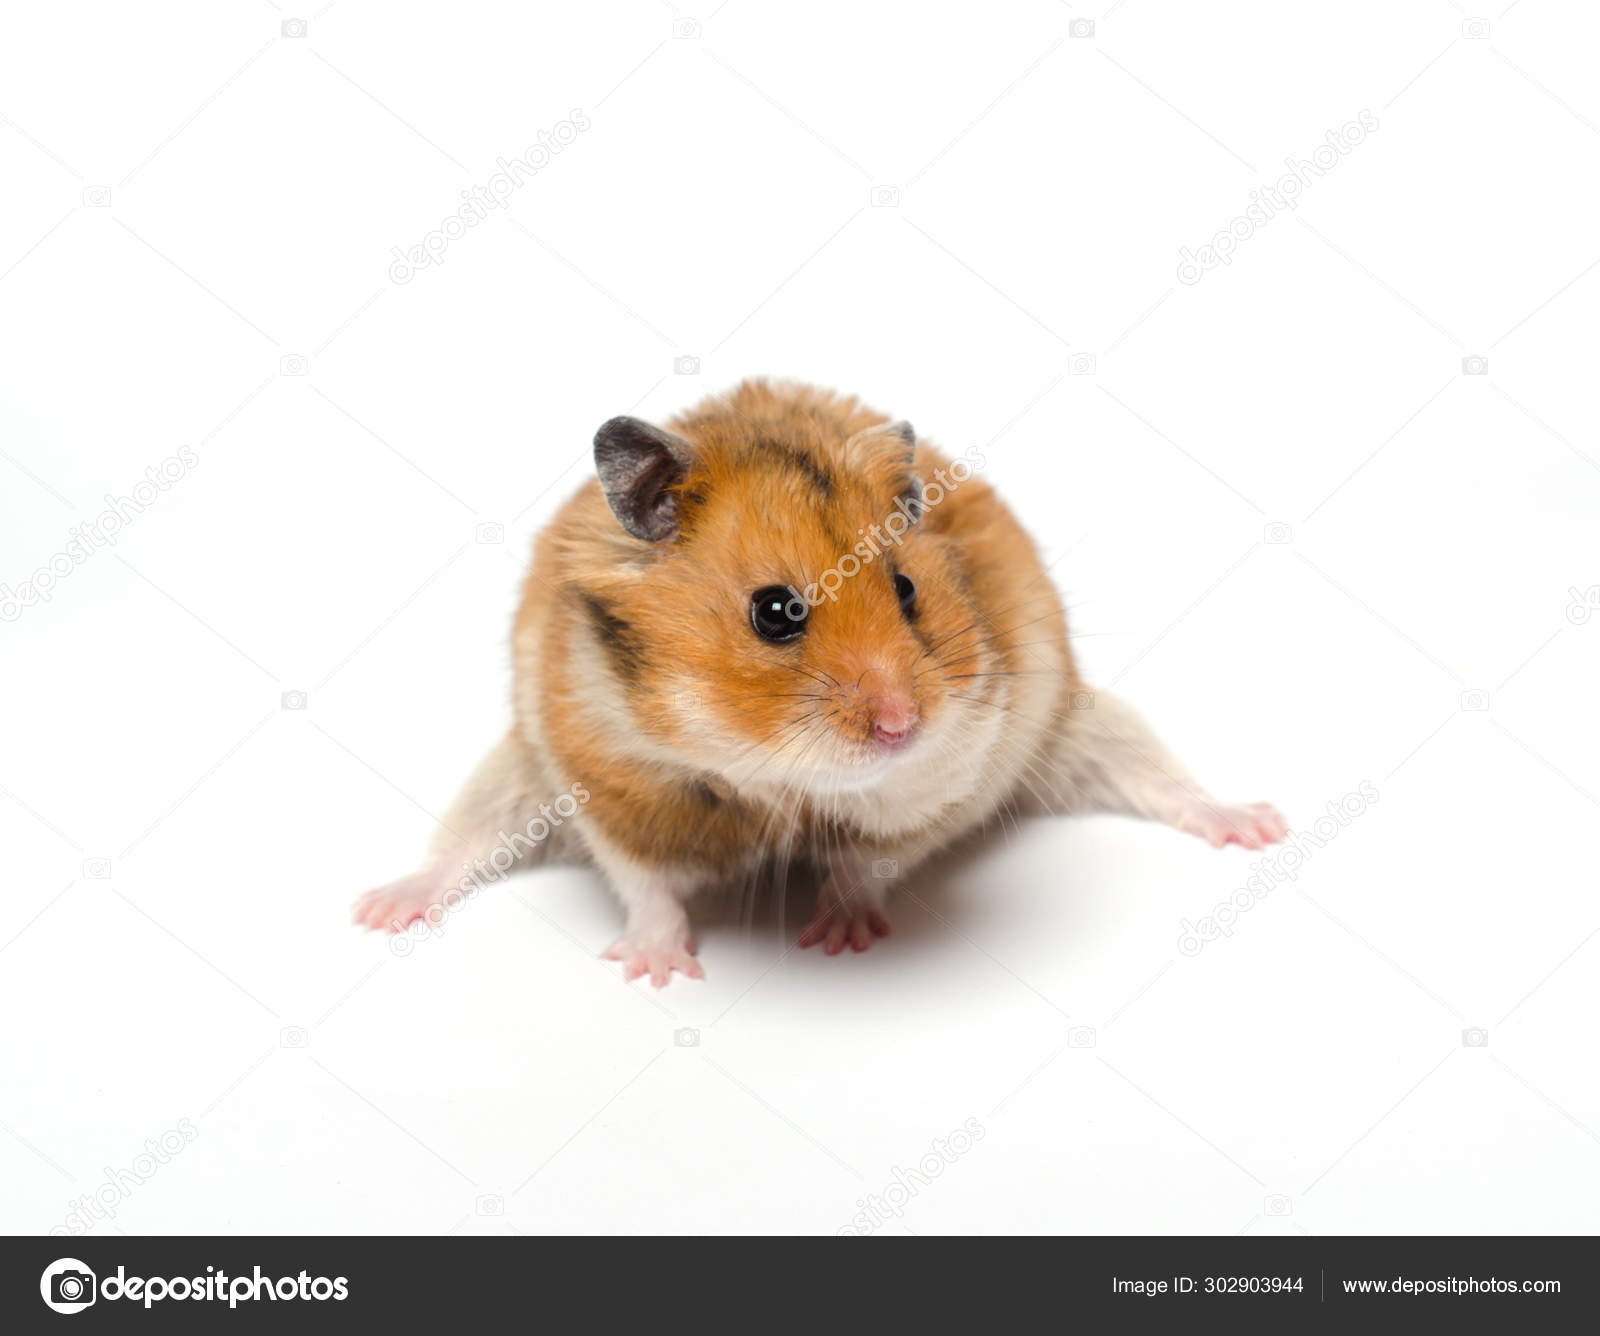 Cute funny Syrian hamster Stock Photo by ©kurashova 302903944